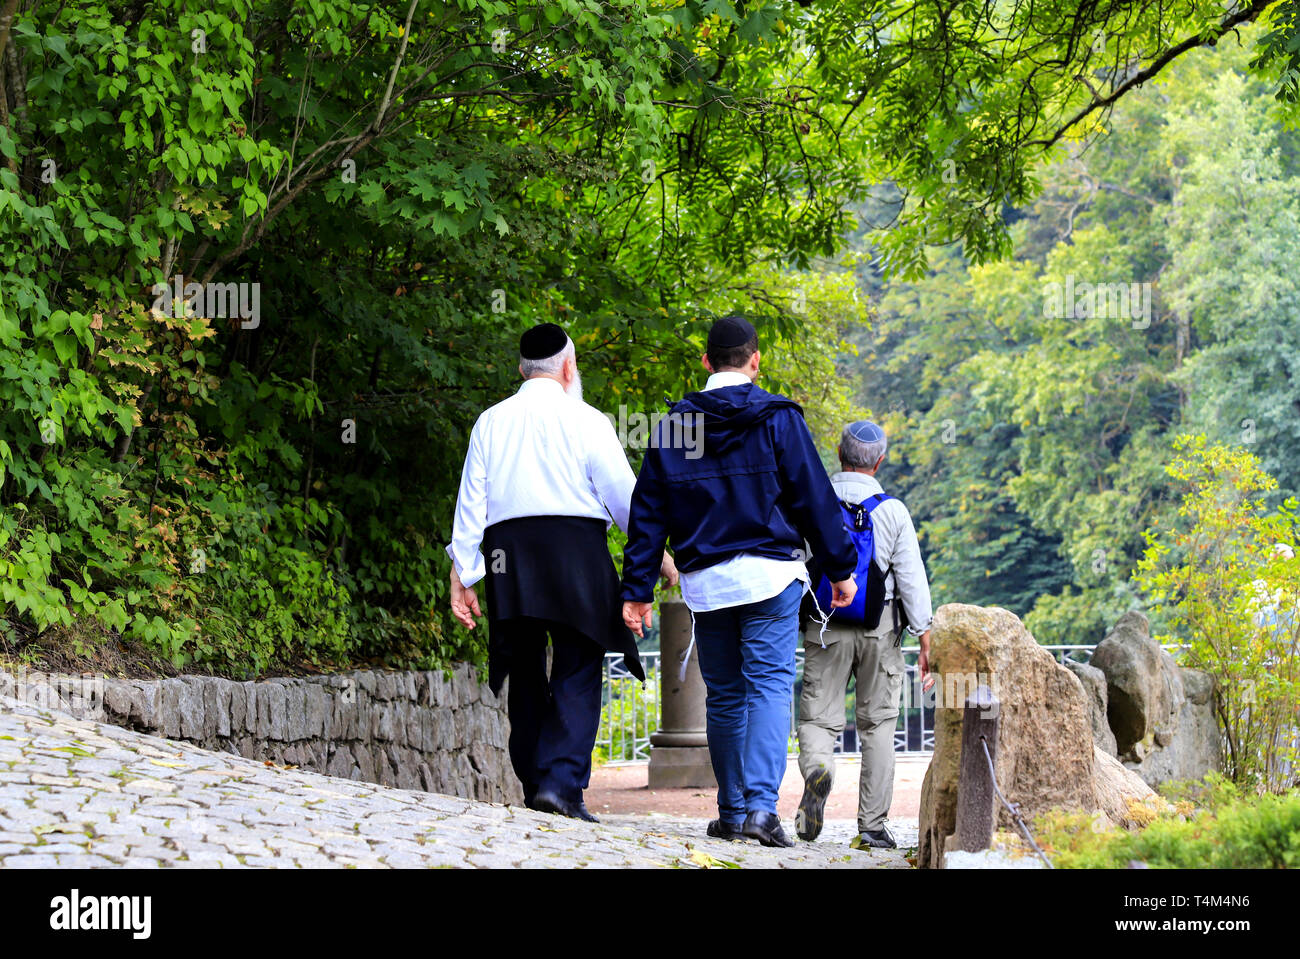 Ältere Menschen, eine chassidische Juden Familie Spaziergang im Park während das Jüdische Neue Jahr. Uman, Ukraine Stockfoto